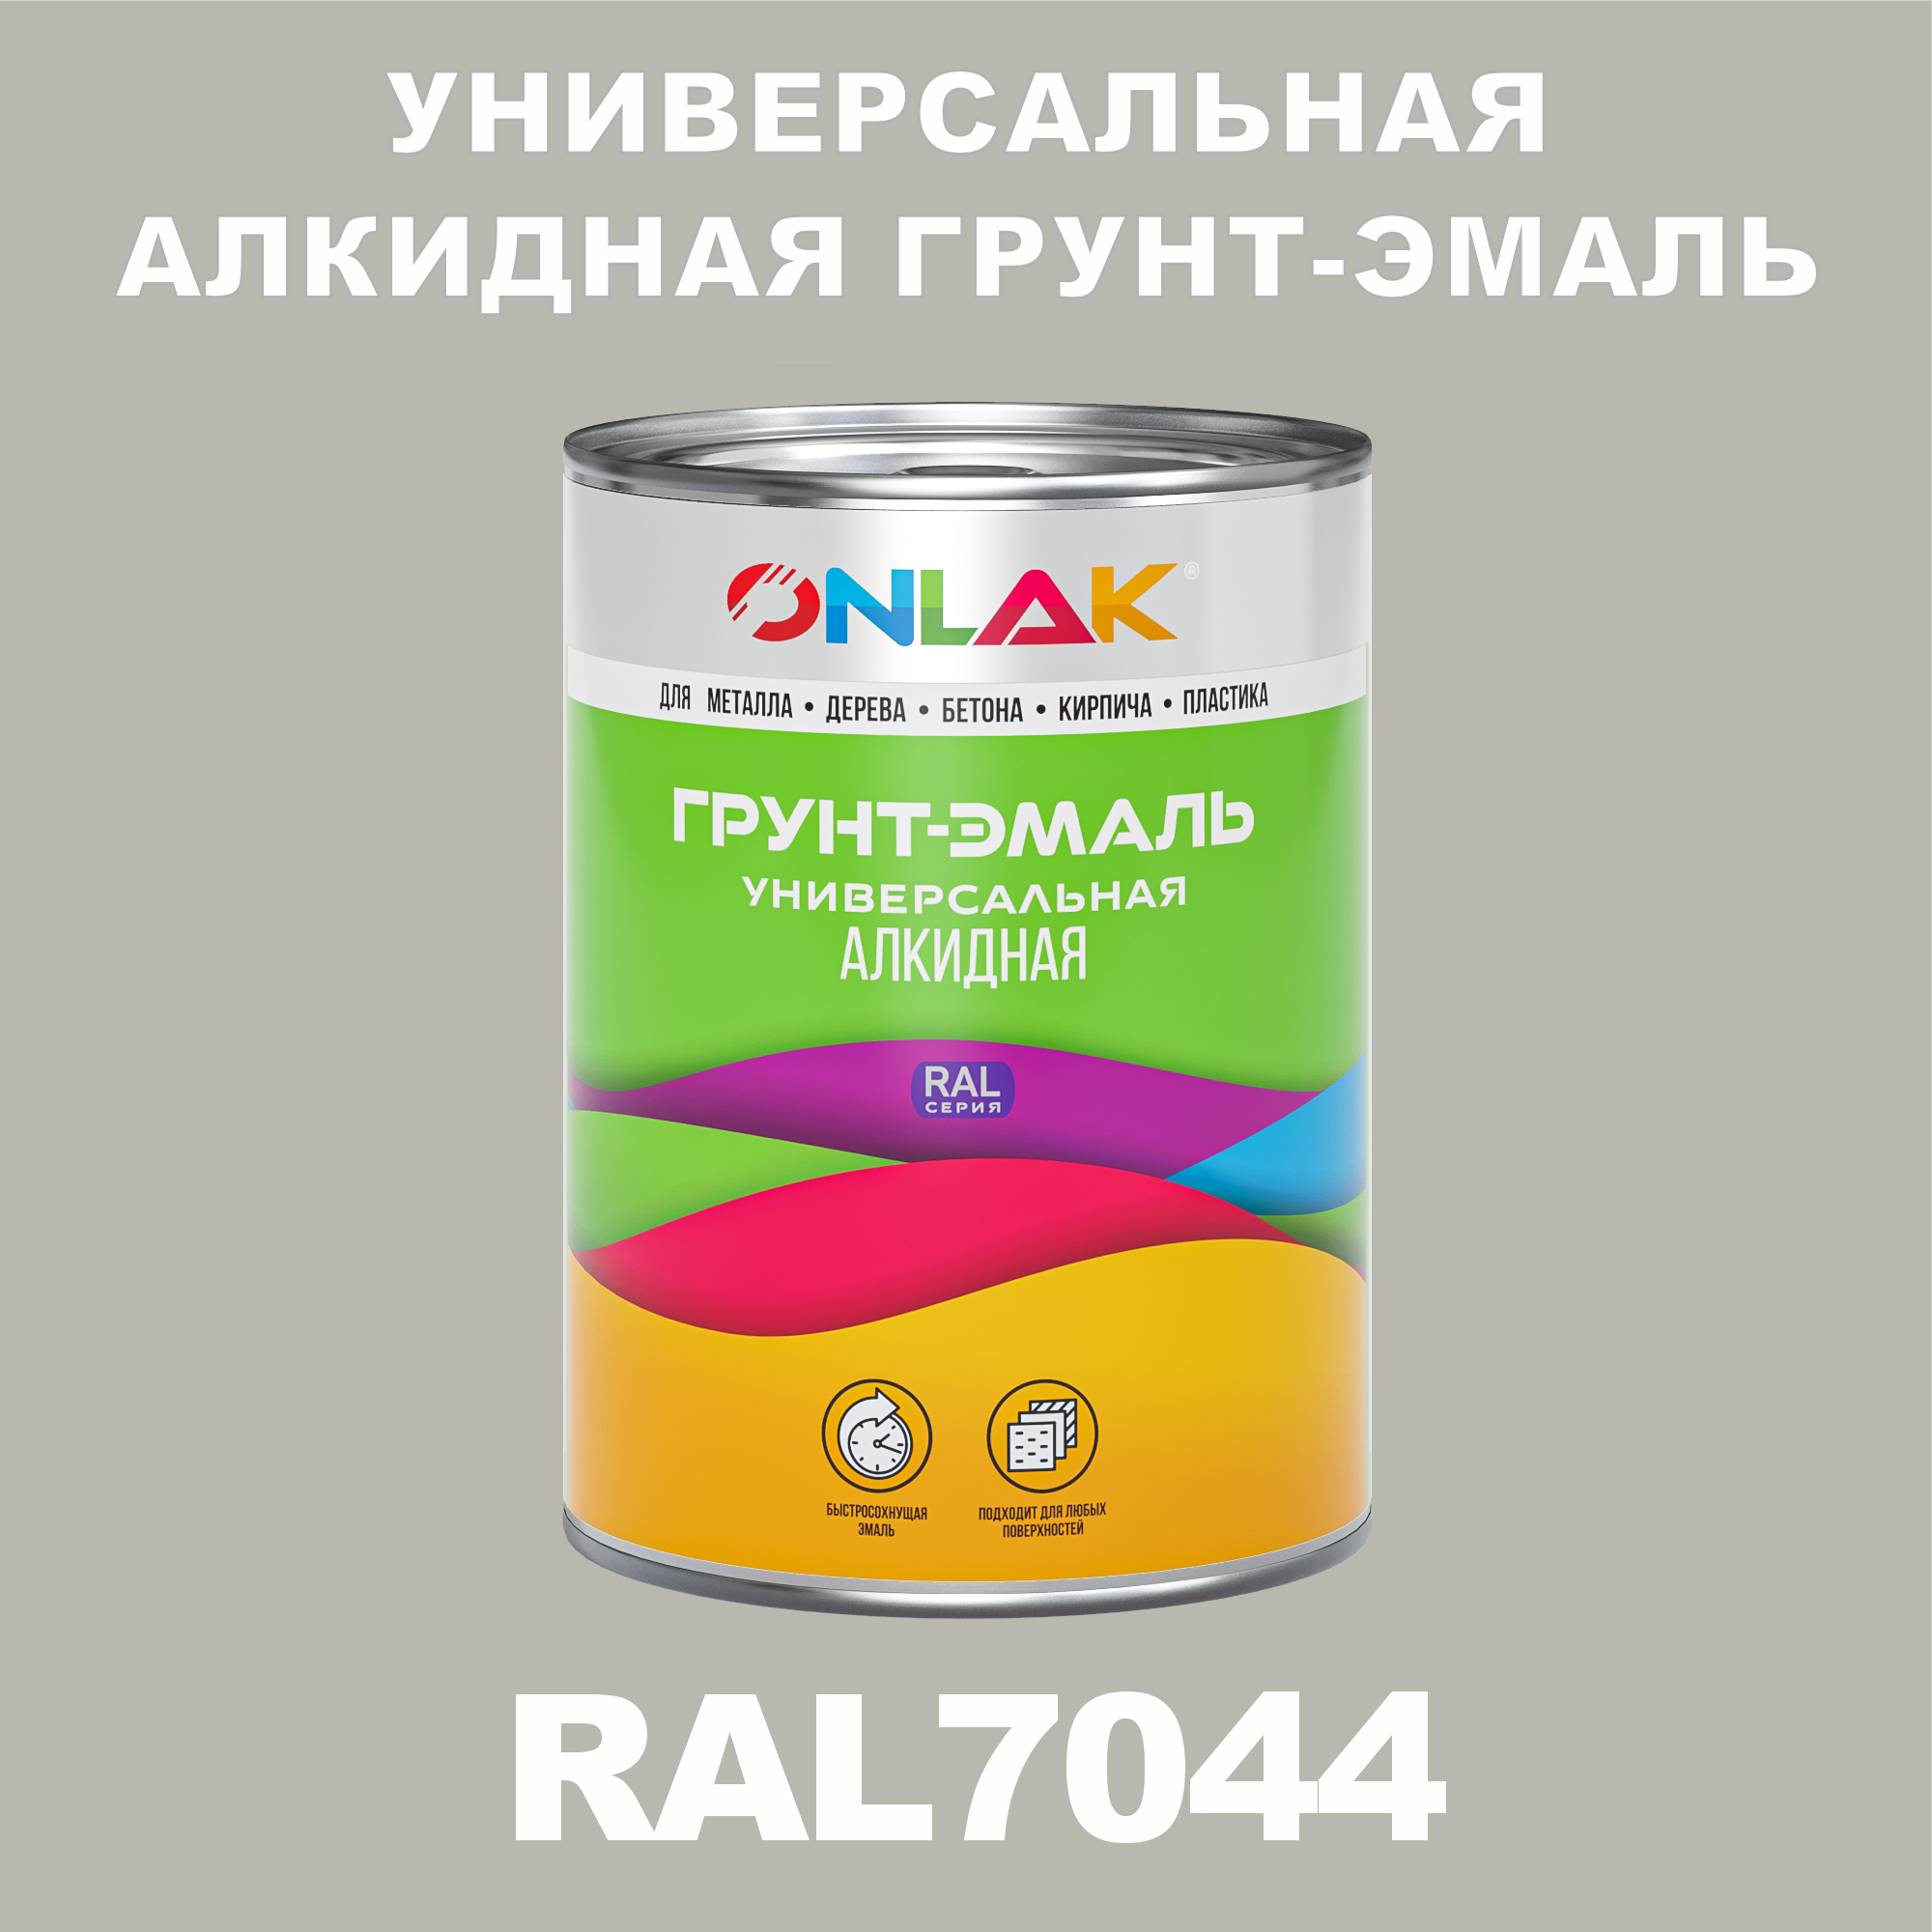 Грунт-эмаль ONLAK 1К RAL7044 антикоррозионная алкидная по металлу по ржавчине 1 кг